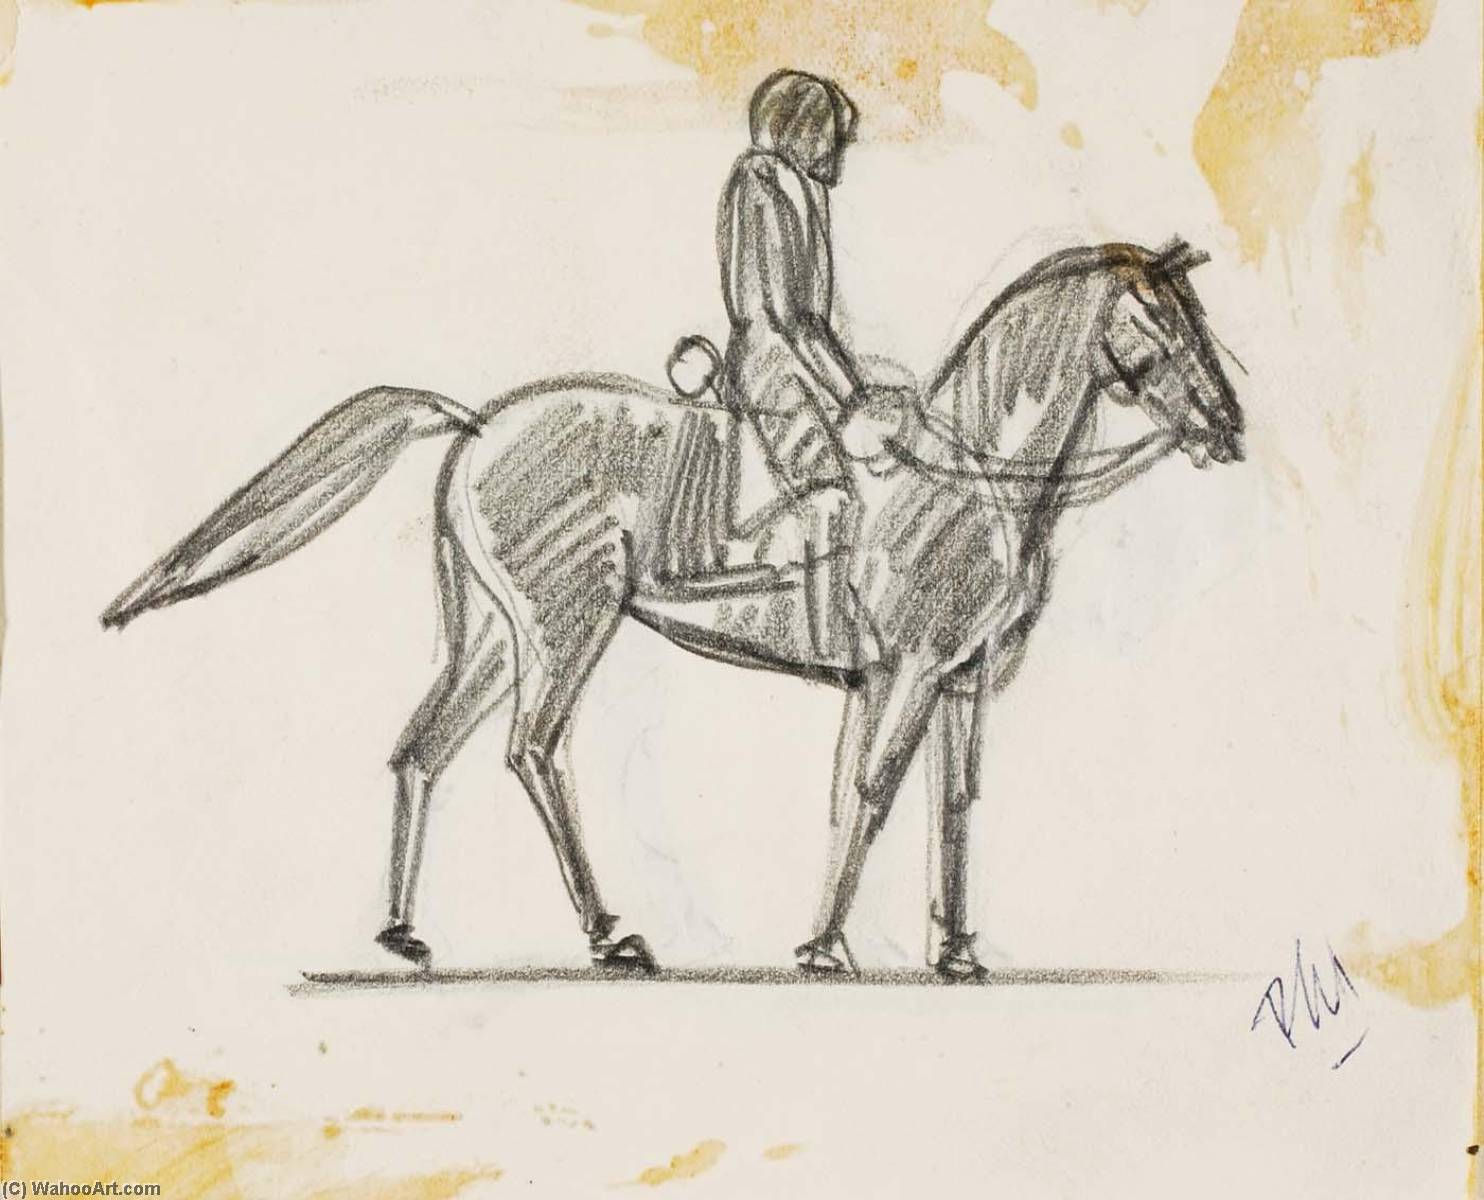 Wikoo.org - موسوعة الفنون الجميلة - اللوحة، العمل الفني Paul Manship - Sketch for Equestrian Statue of General Ulysses S. Grant